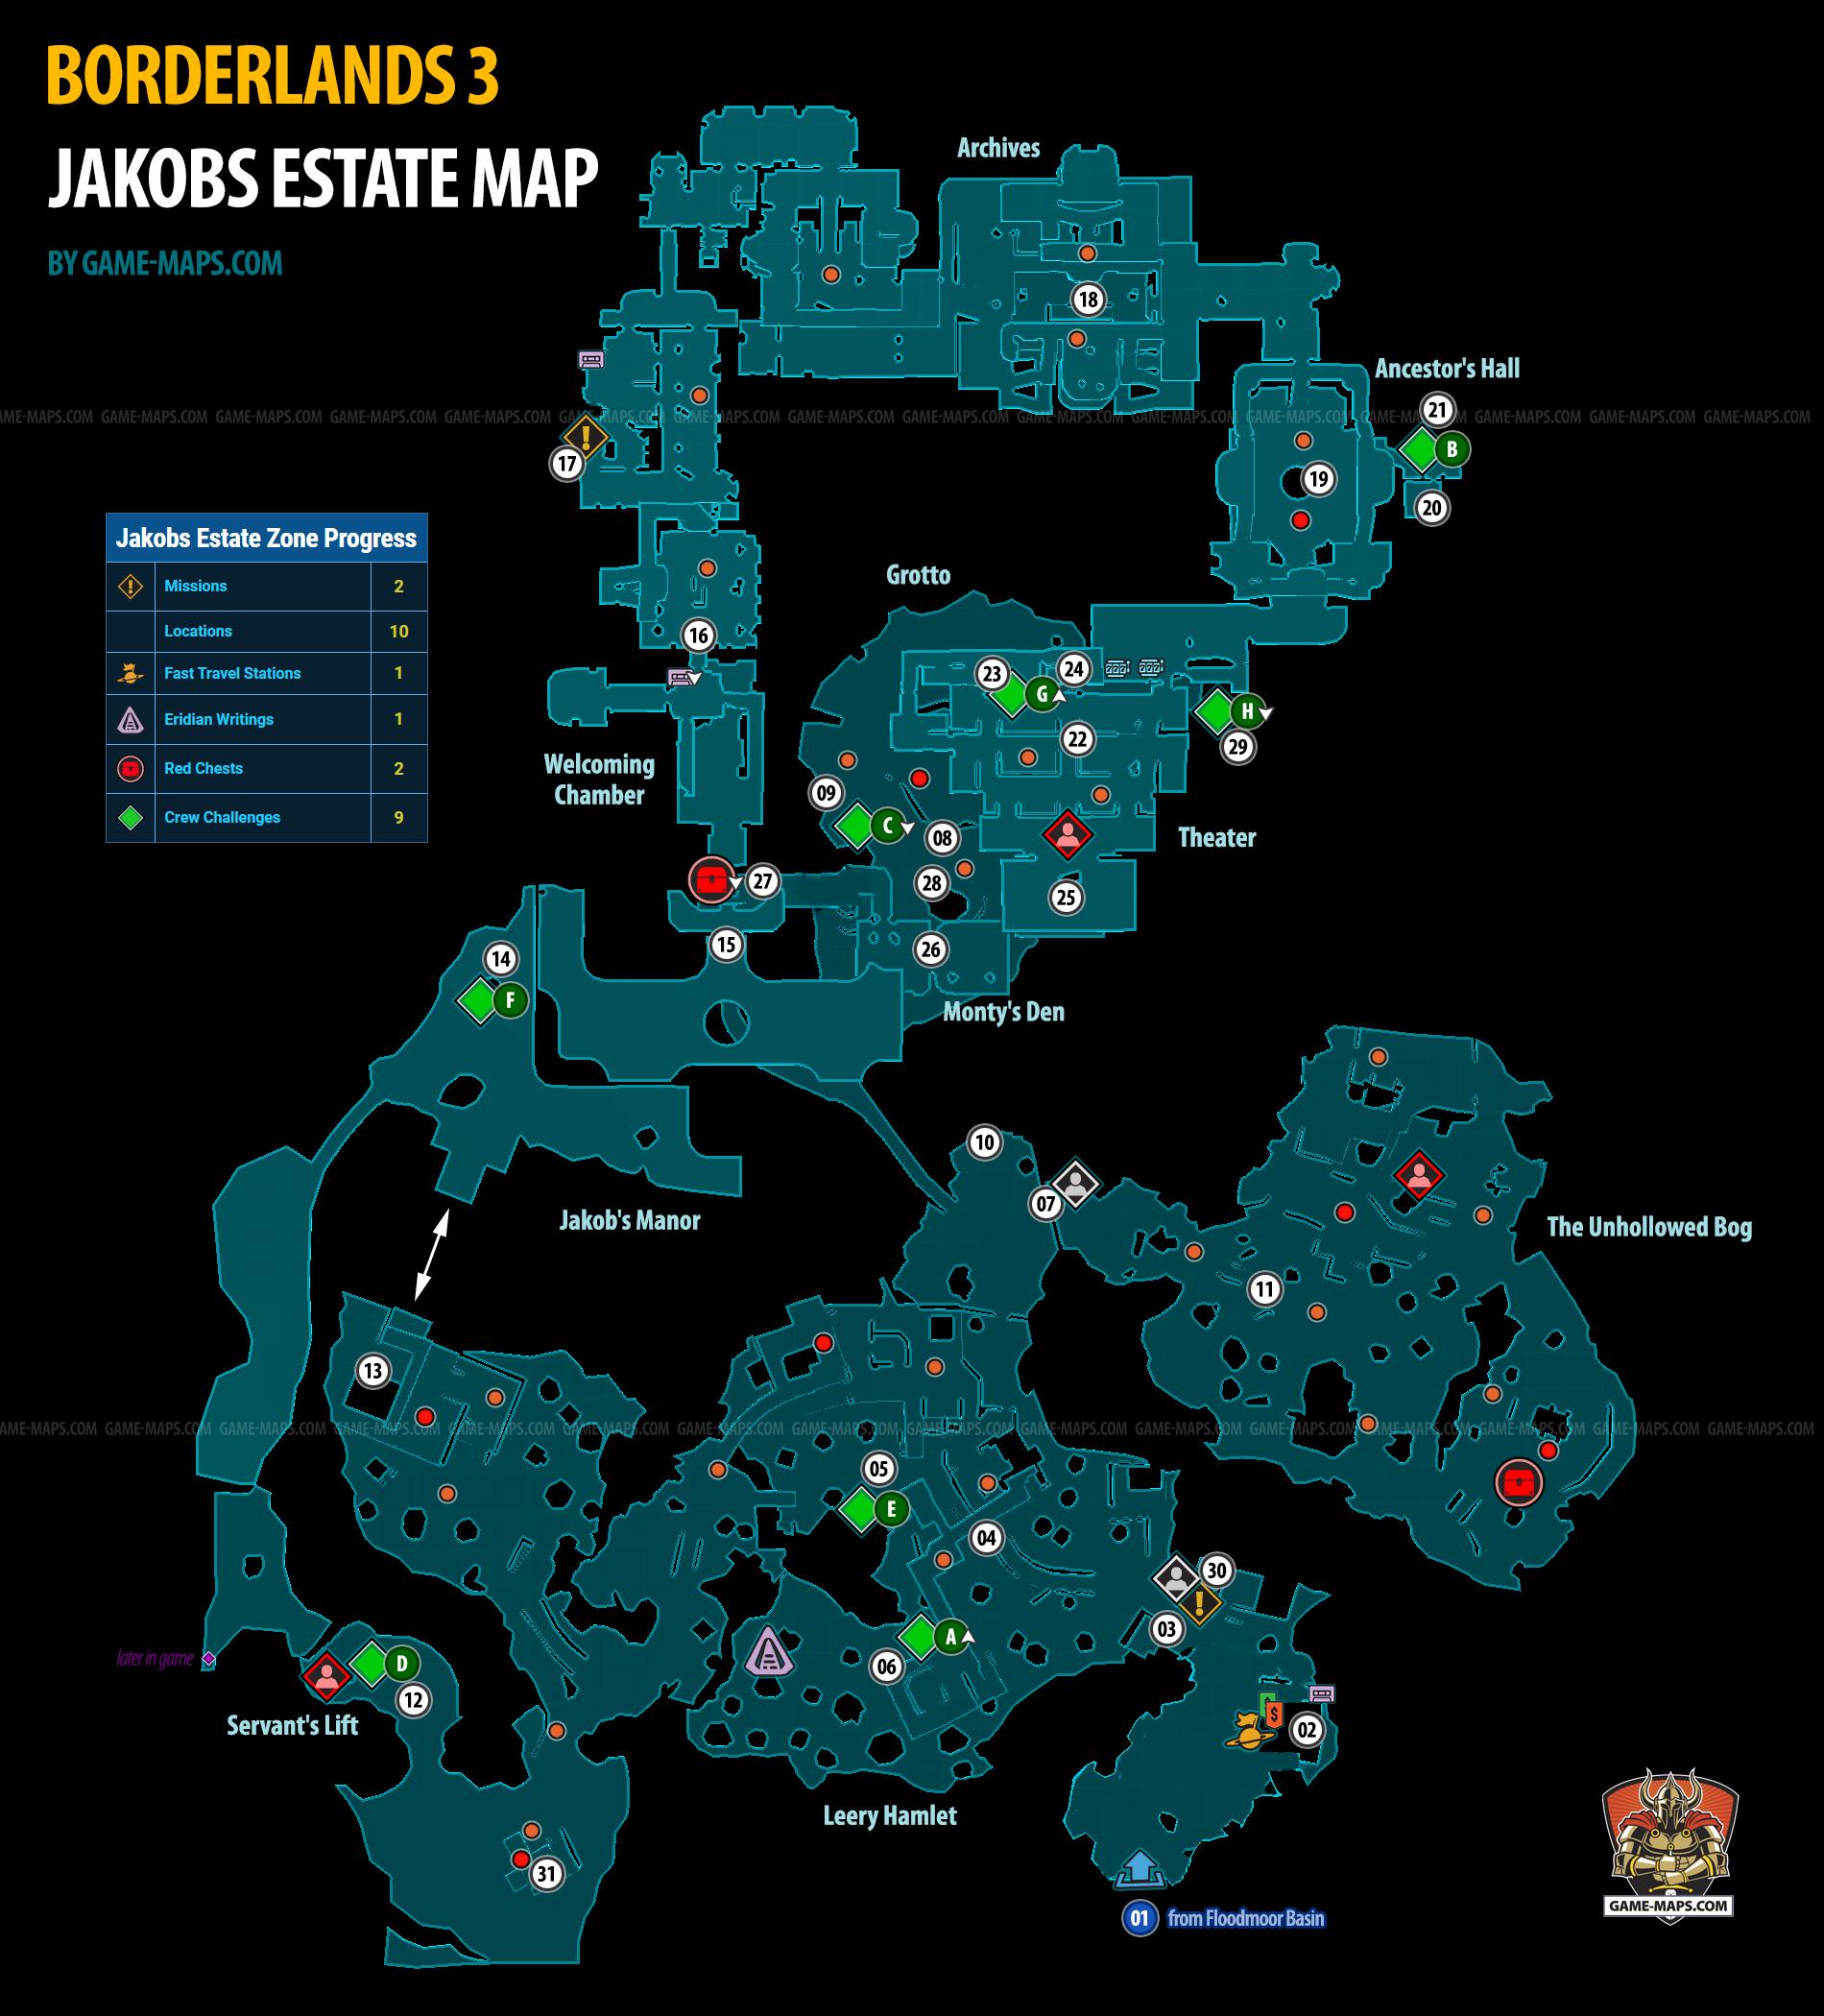 Jakobs Estate Map on Eden-6 Planet for Borderlands 3